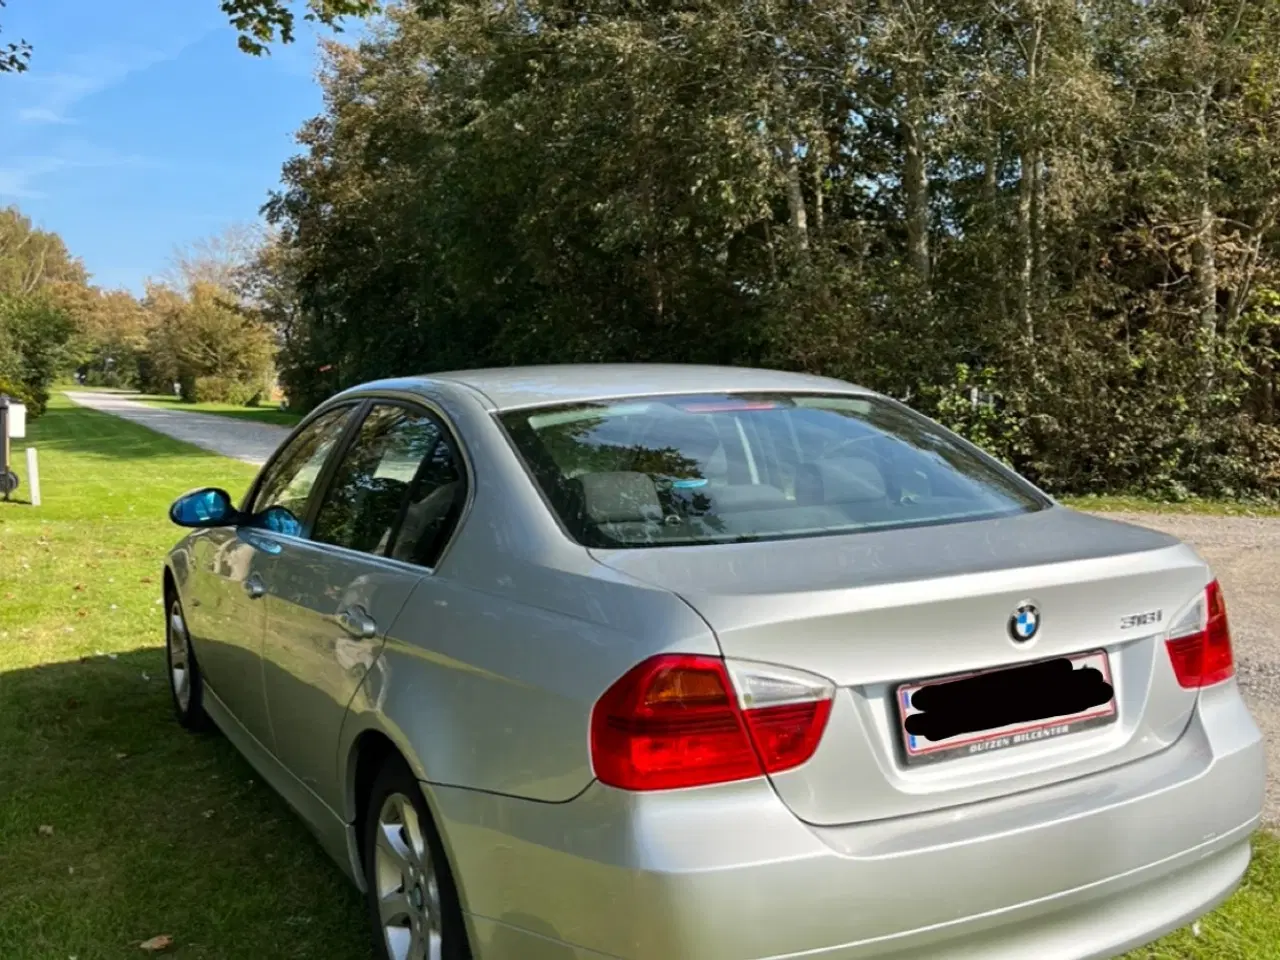 Billede 7 - BMW 318i benzin 2,0 sedan fra 2007